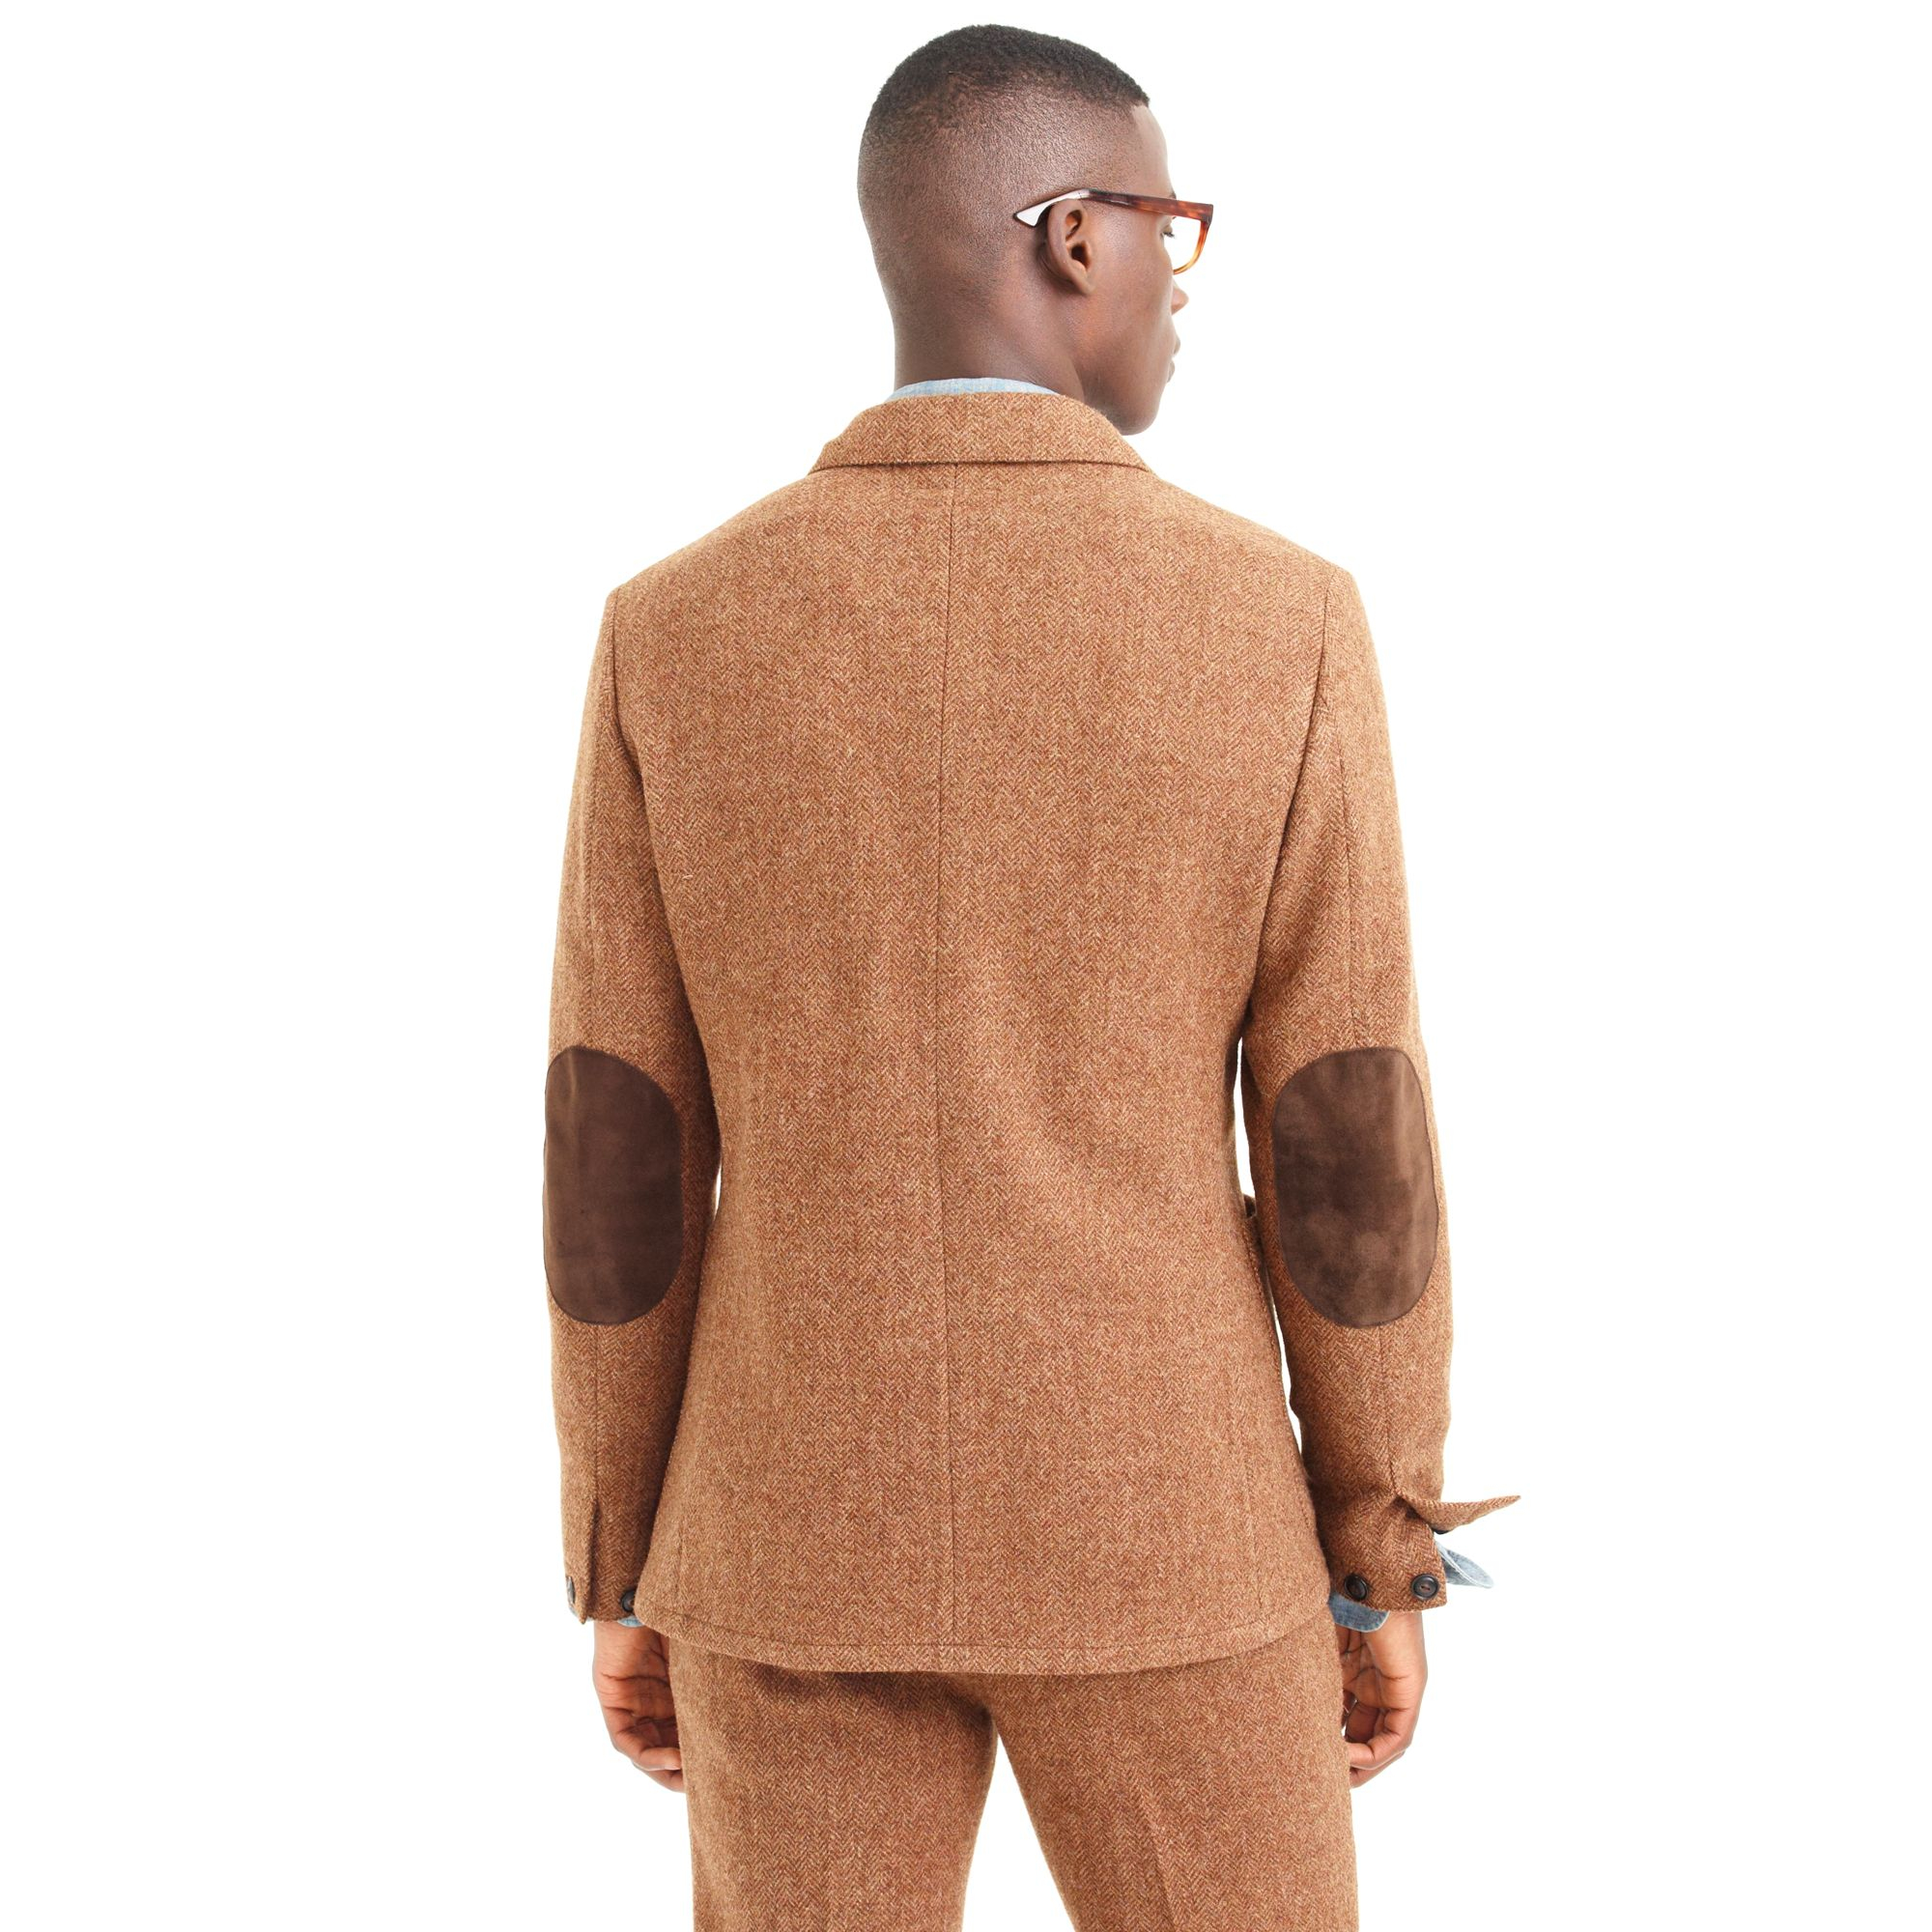 J.crew Wallace & Barnes Suit Jacket In Herringbone English Wool Tweed